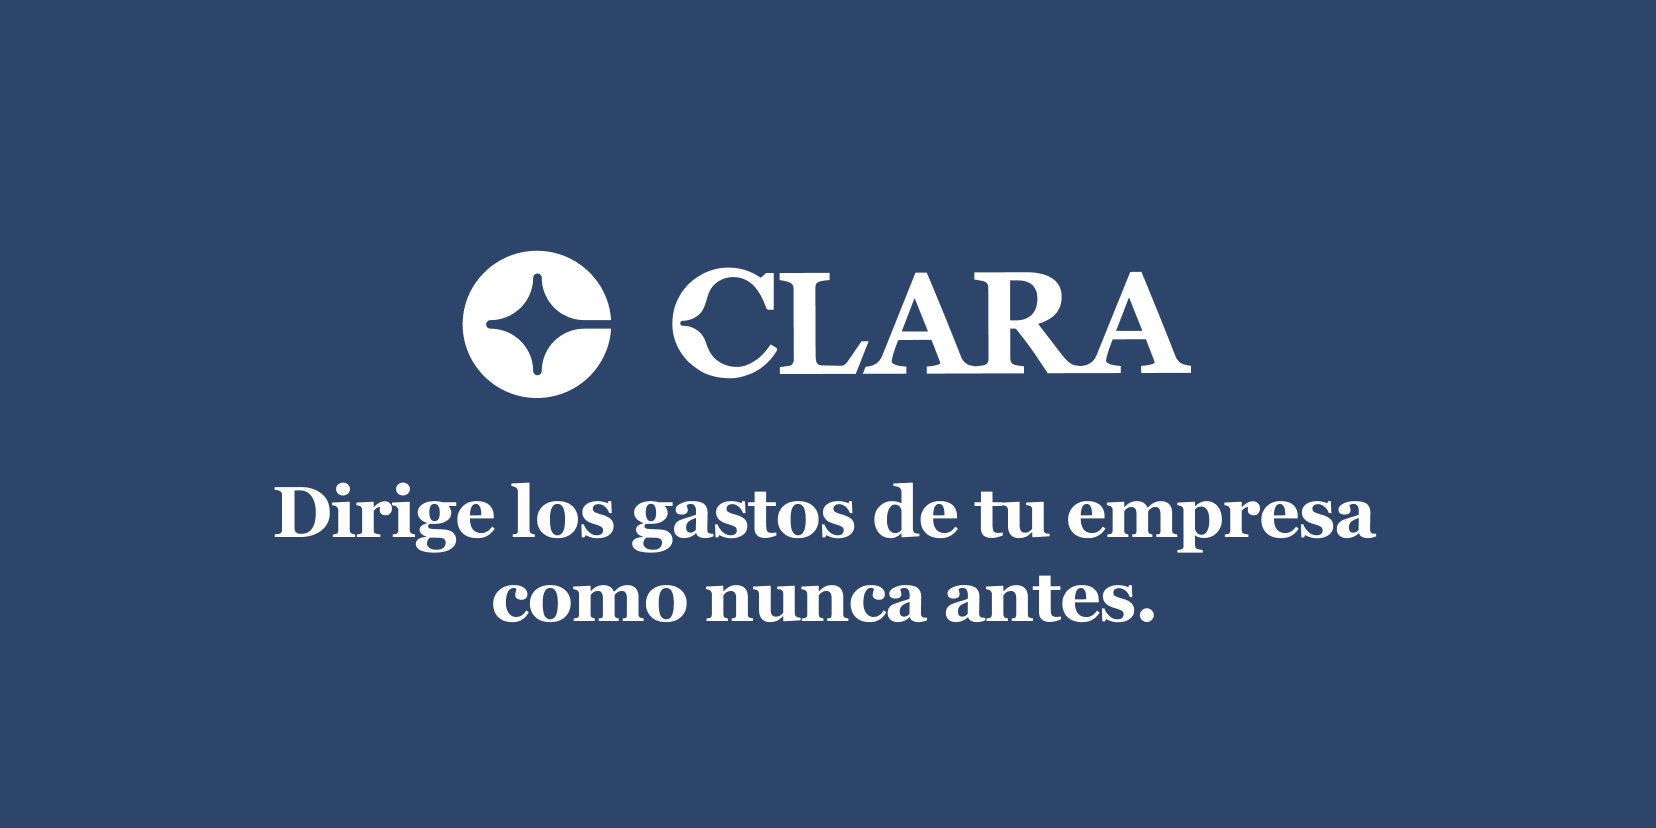 www.clara.com